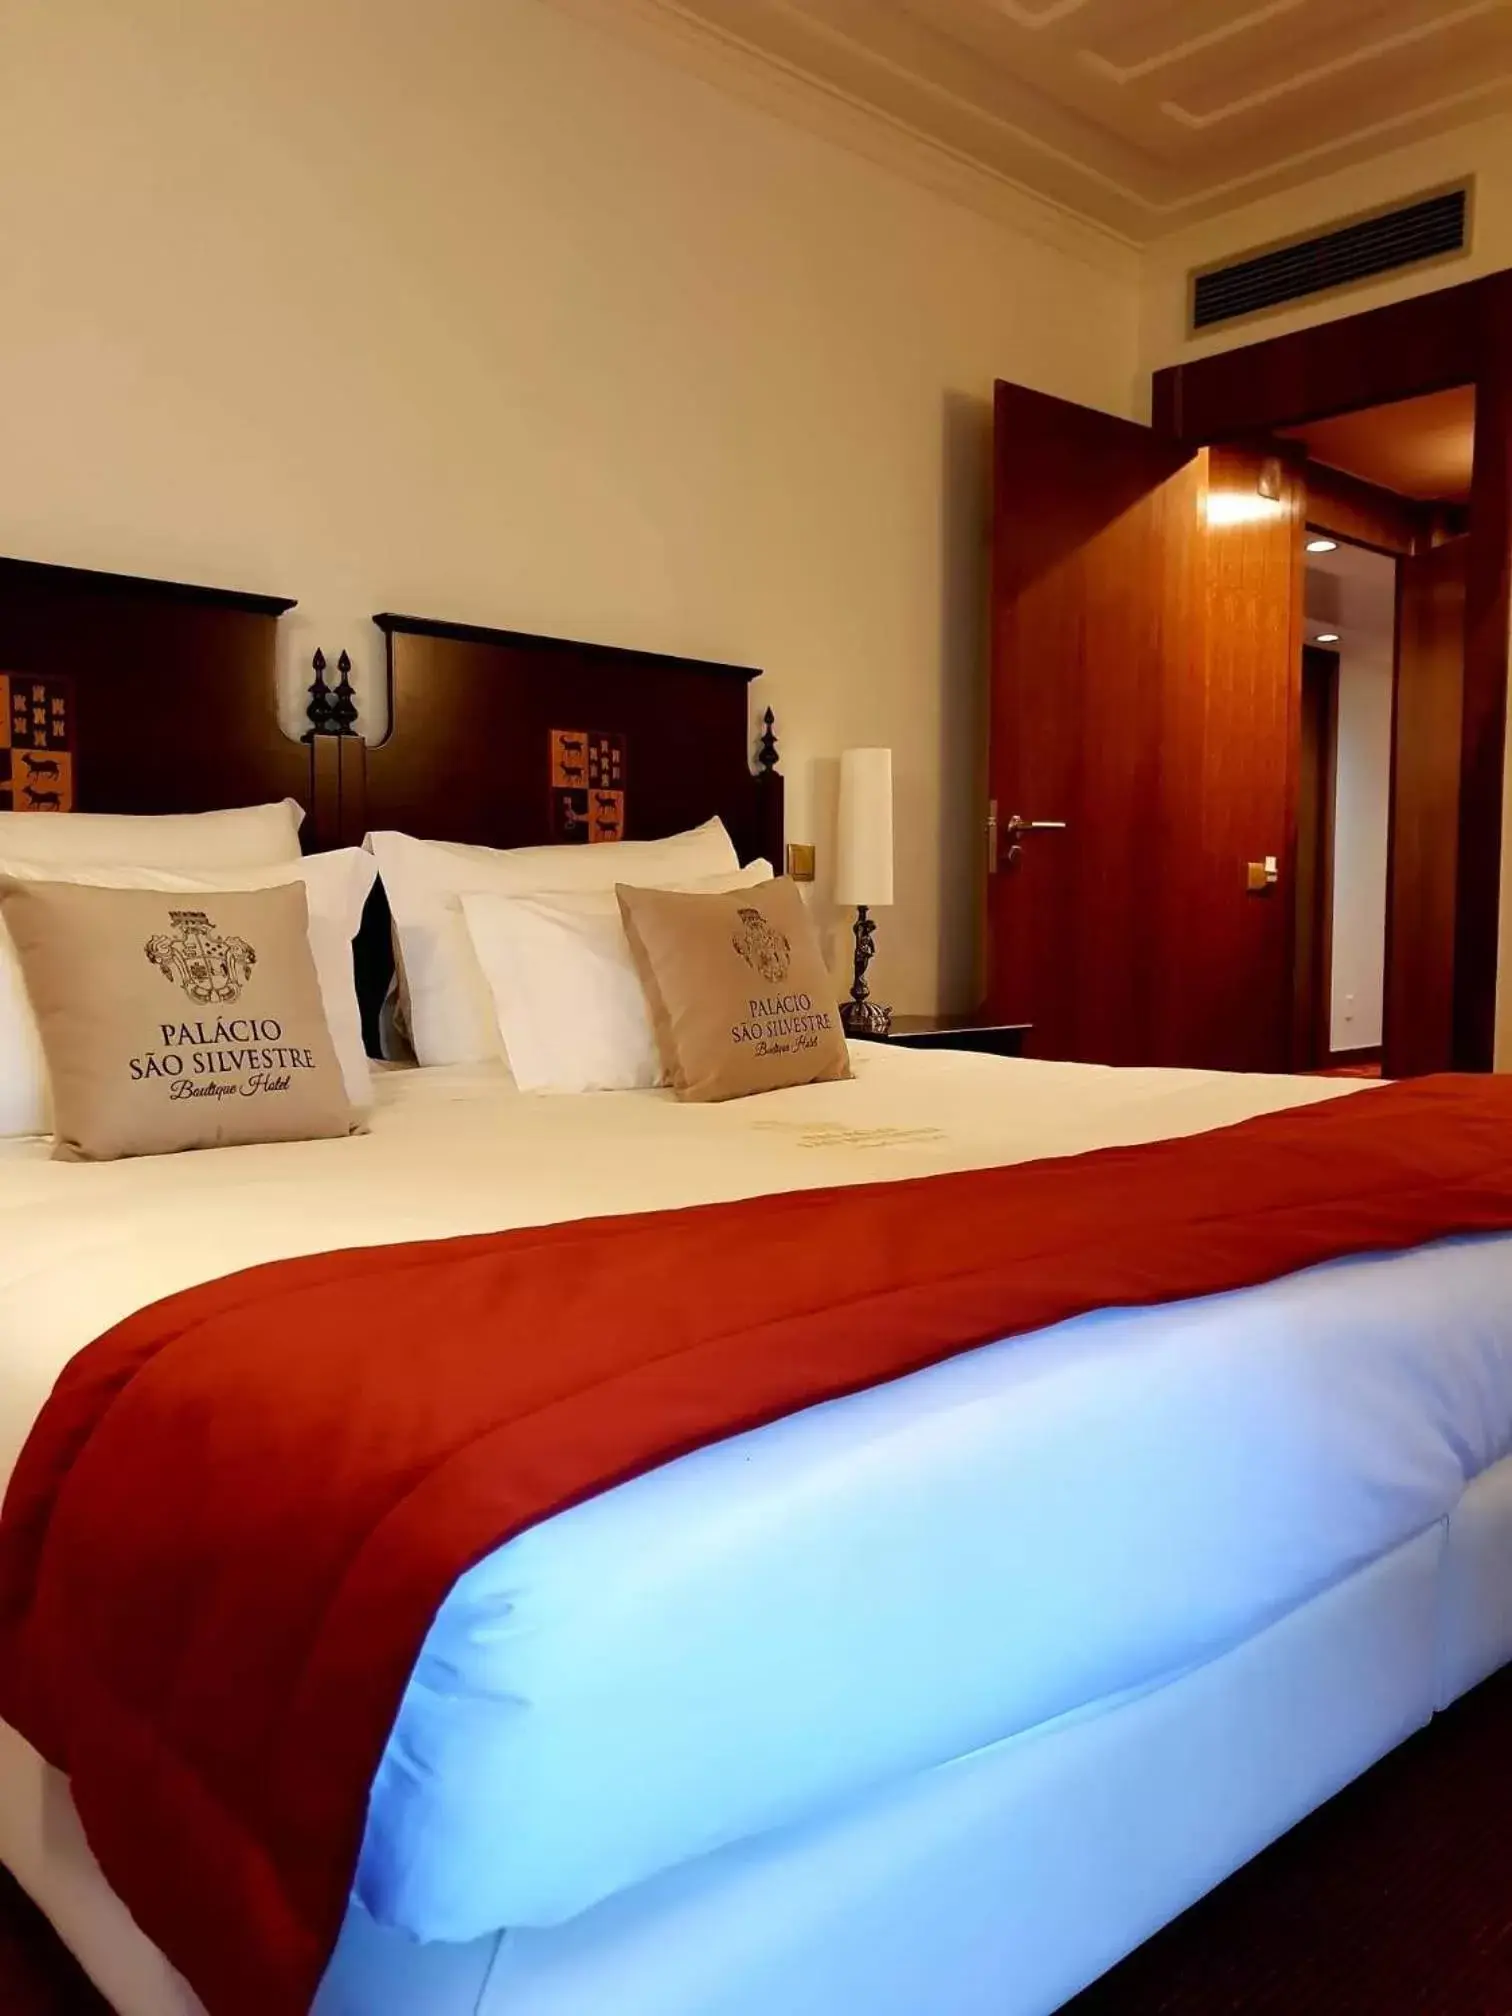 Bed in Palacio São Silvestre-Boutique Hotel